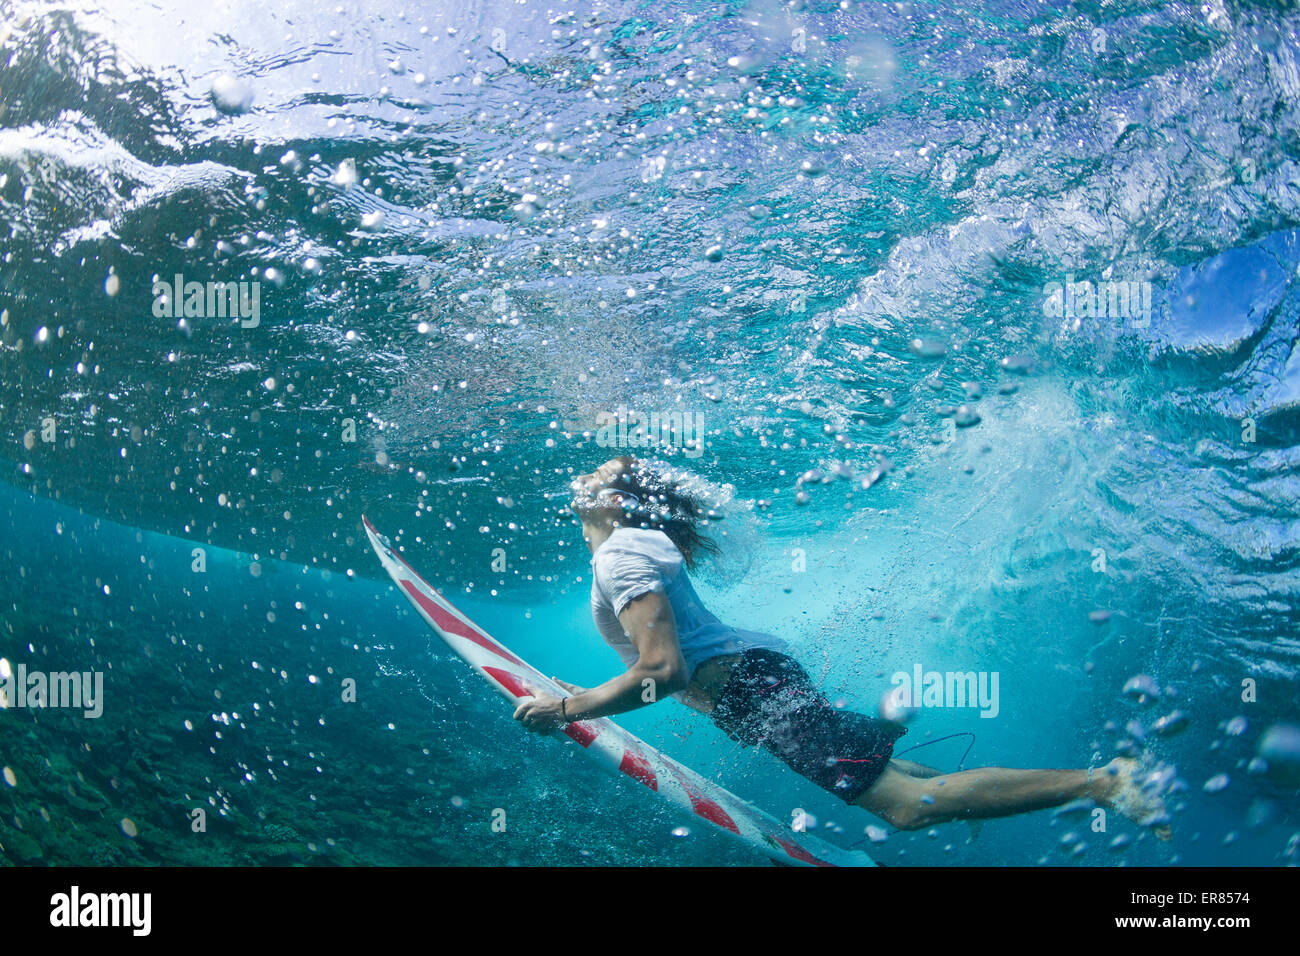 Vista subacquea di un surfista duck immersione sotto un'onda Foto Stock